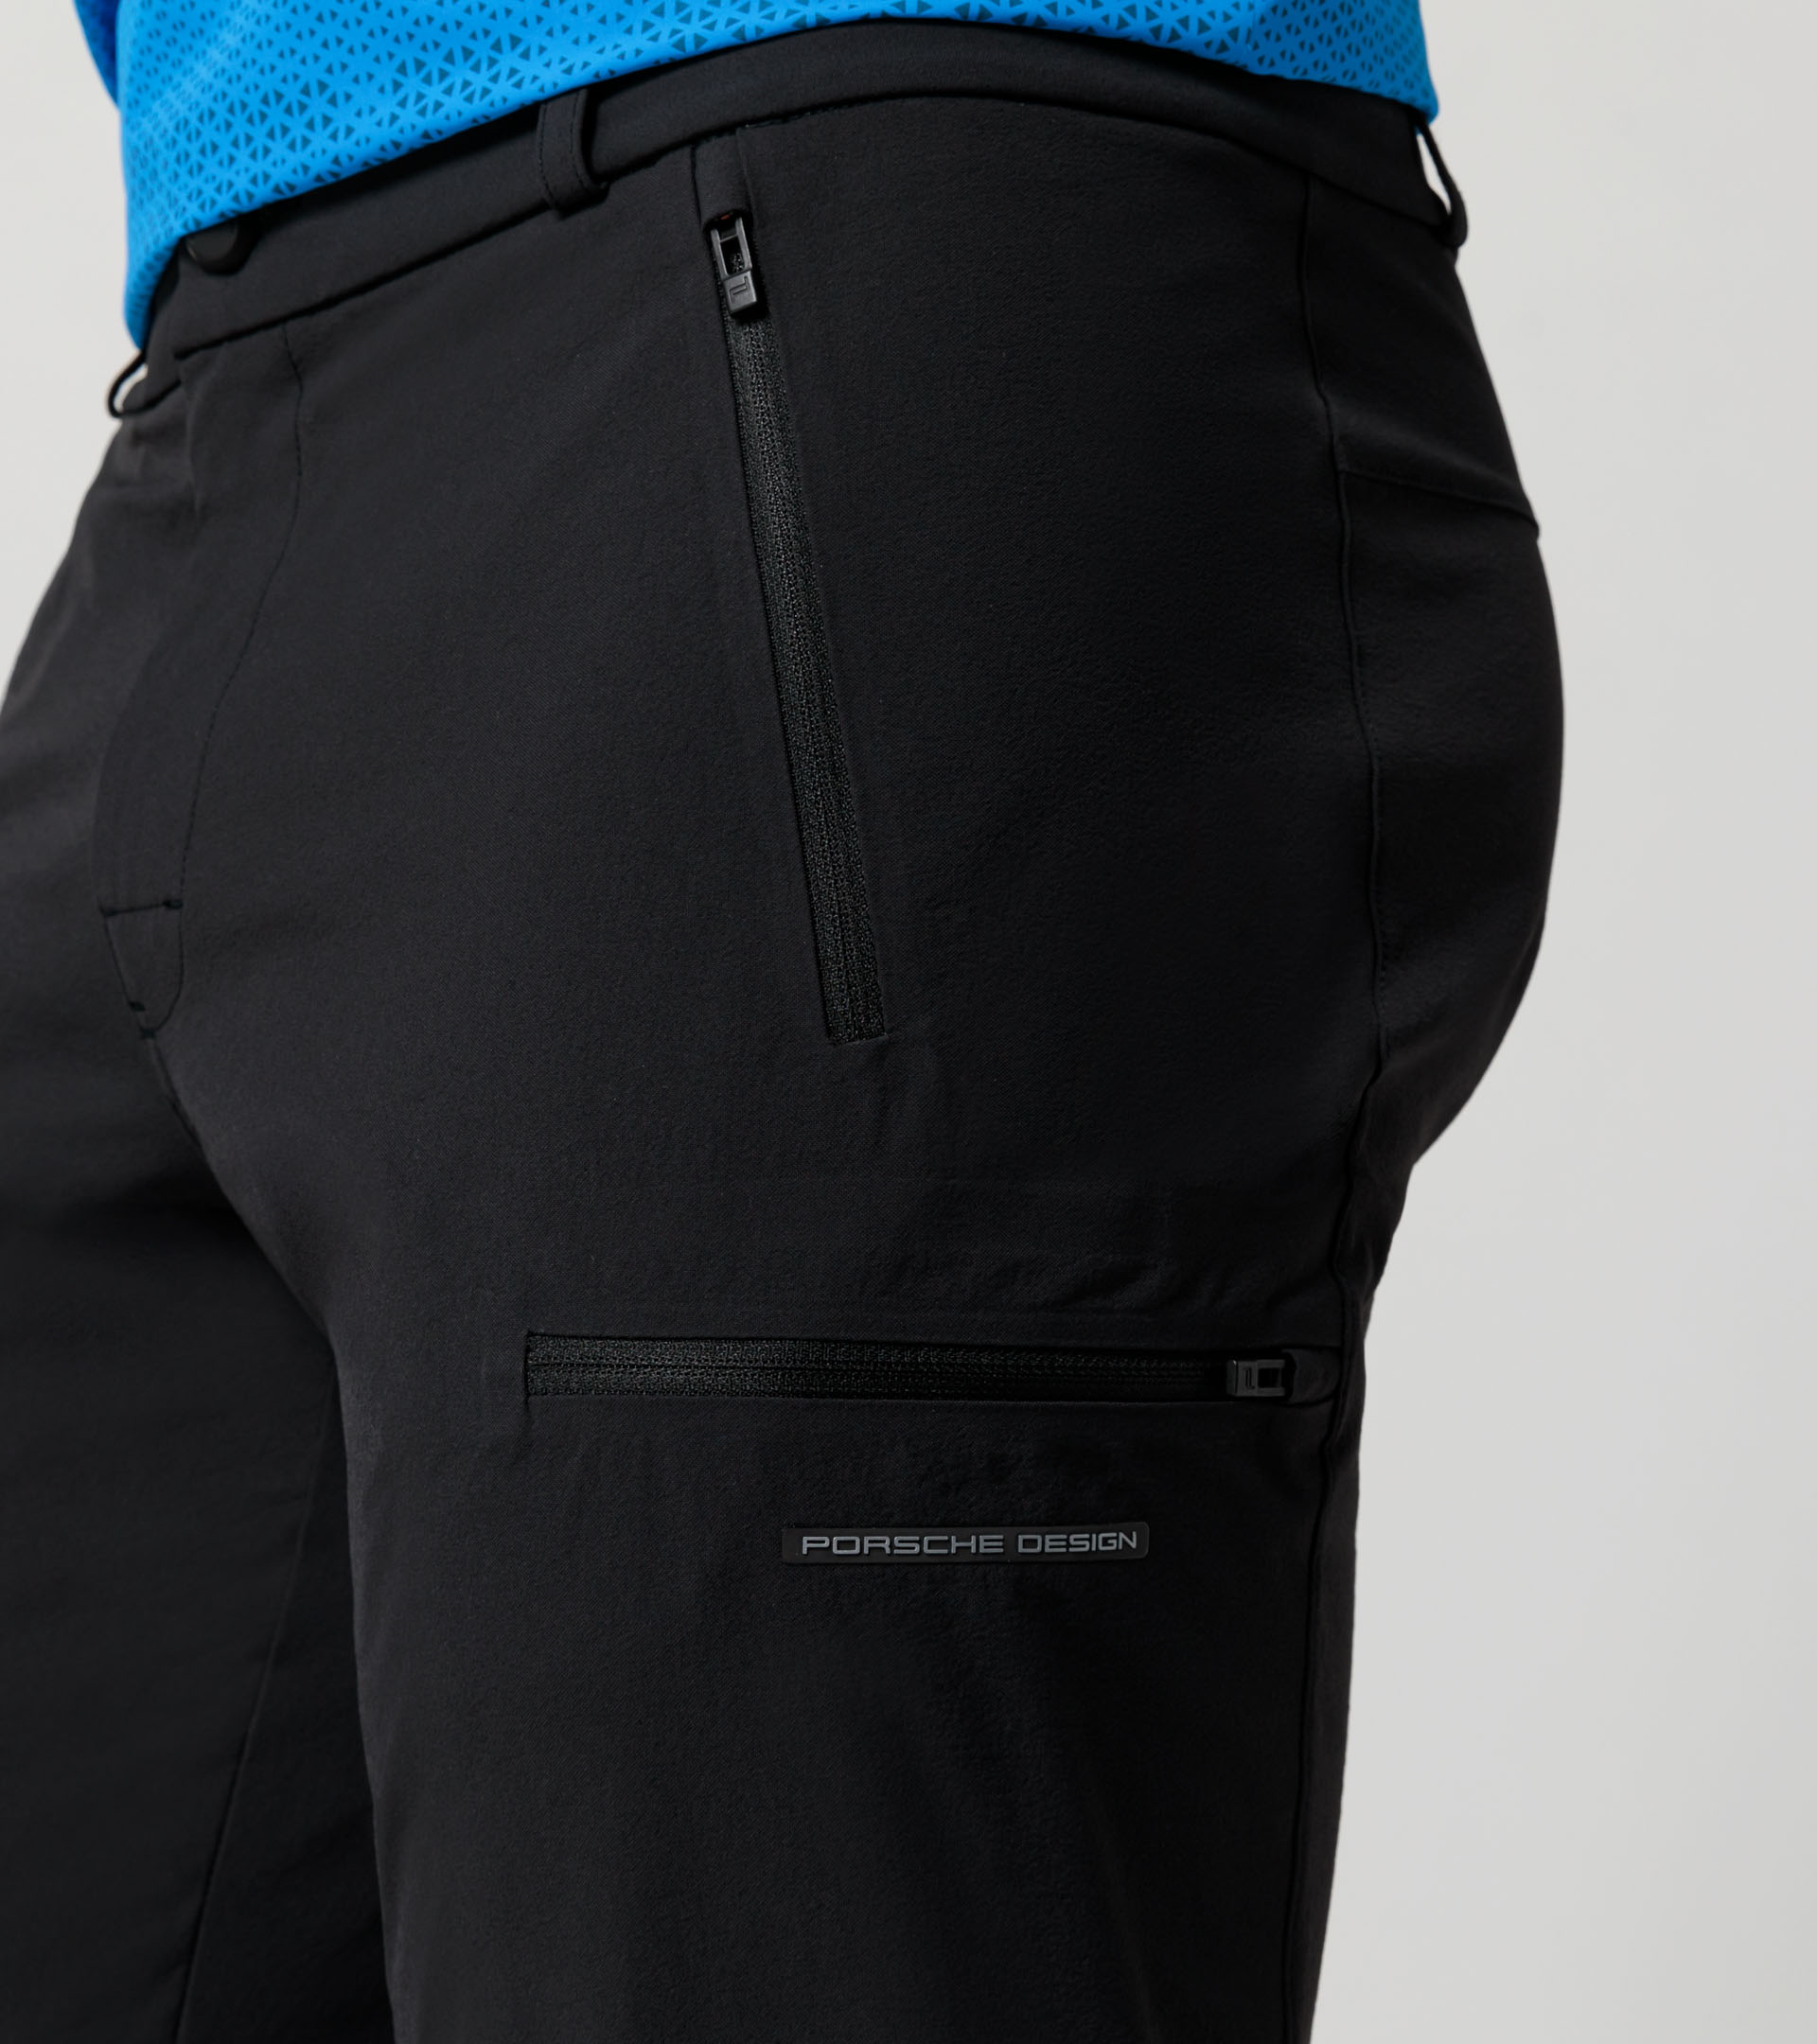 Cargo trousers - Exclusive Sports Pants for Men | Porsche Design ...